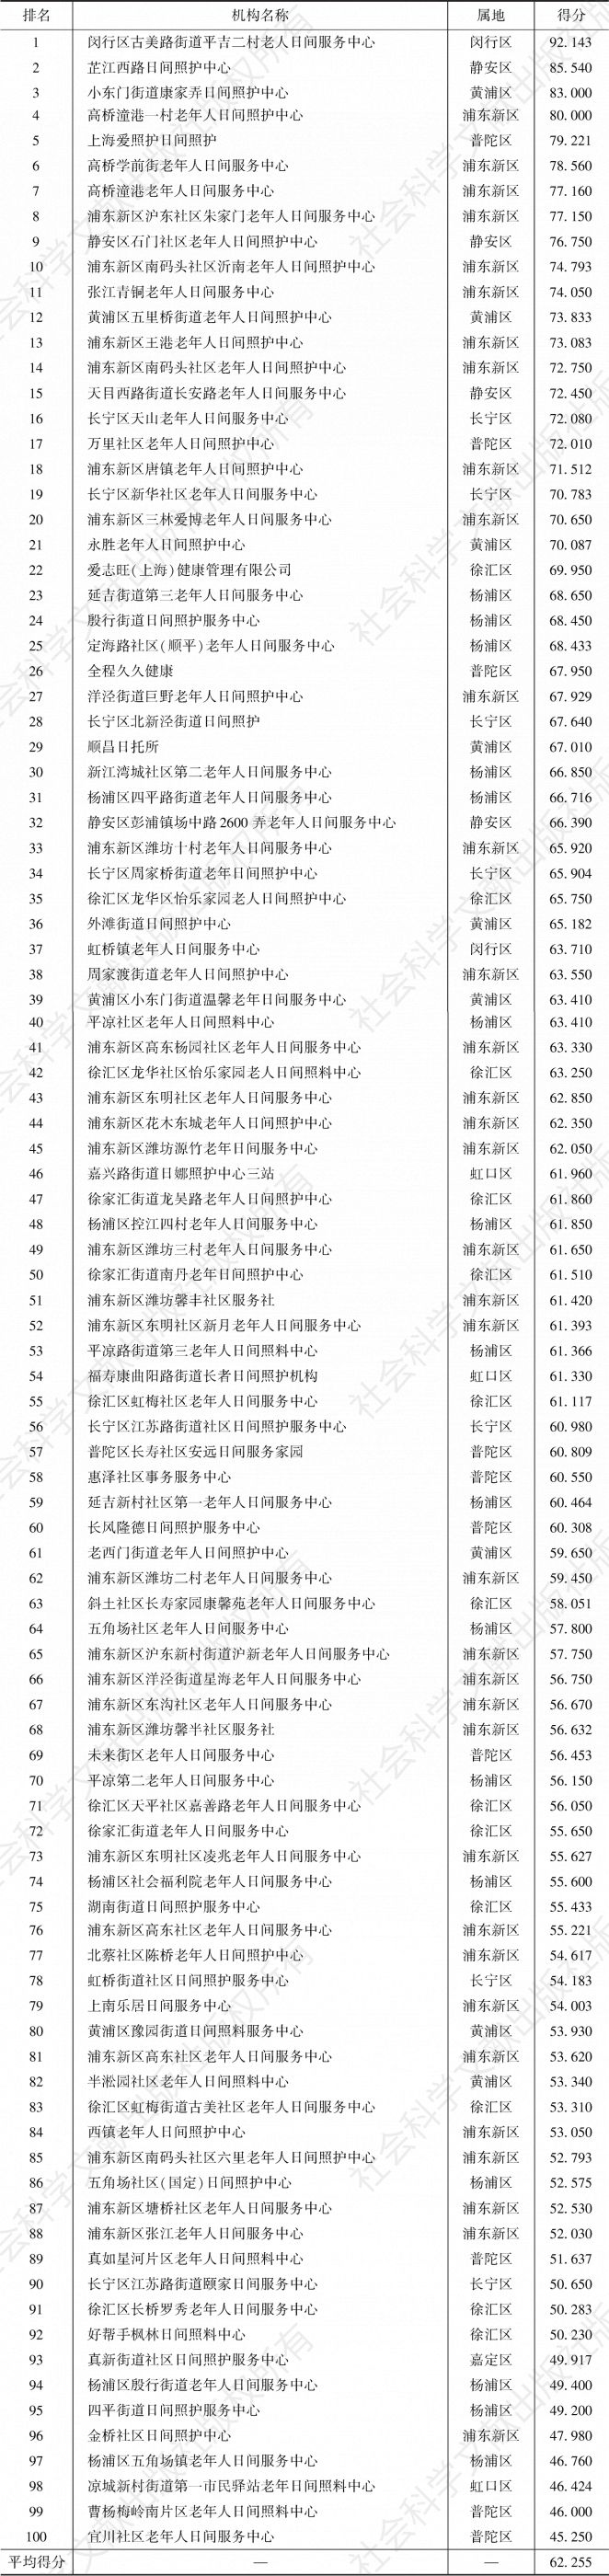 表5-11 上海市中心城区日间照料中心100强服务水平单项指标排名及得分